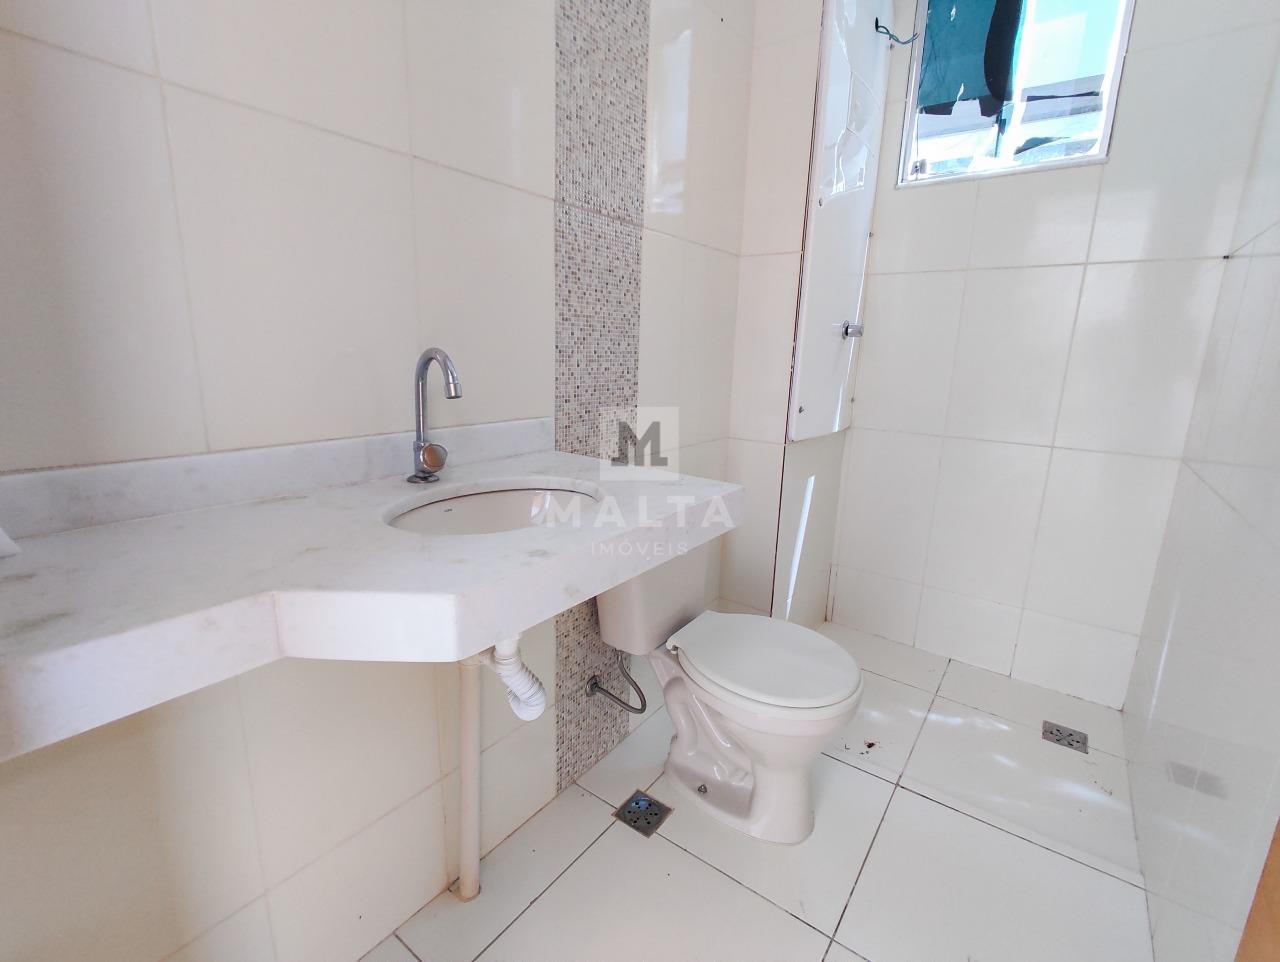 Apartamento Area Privativa à venda no bairro Petrópolis de 3 quartos: Banheiro Social